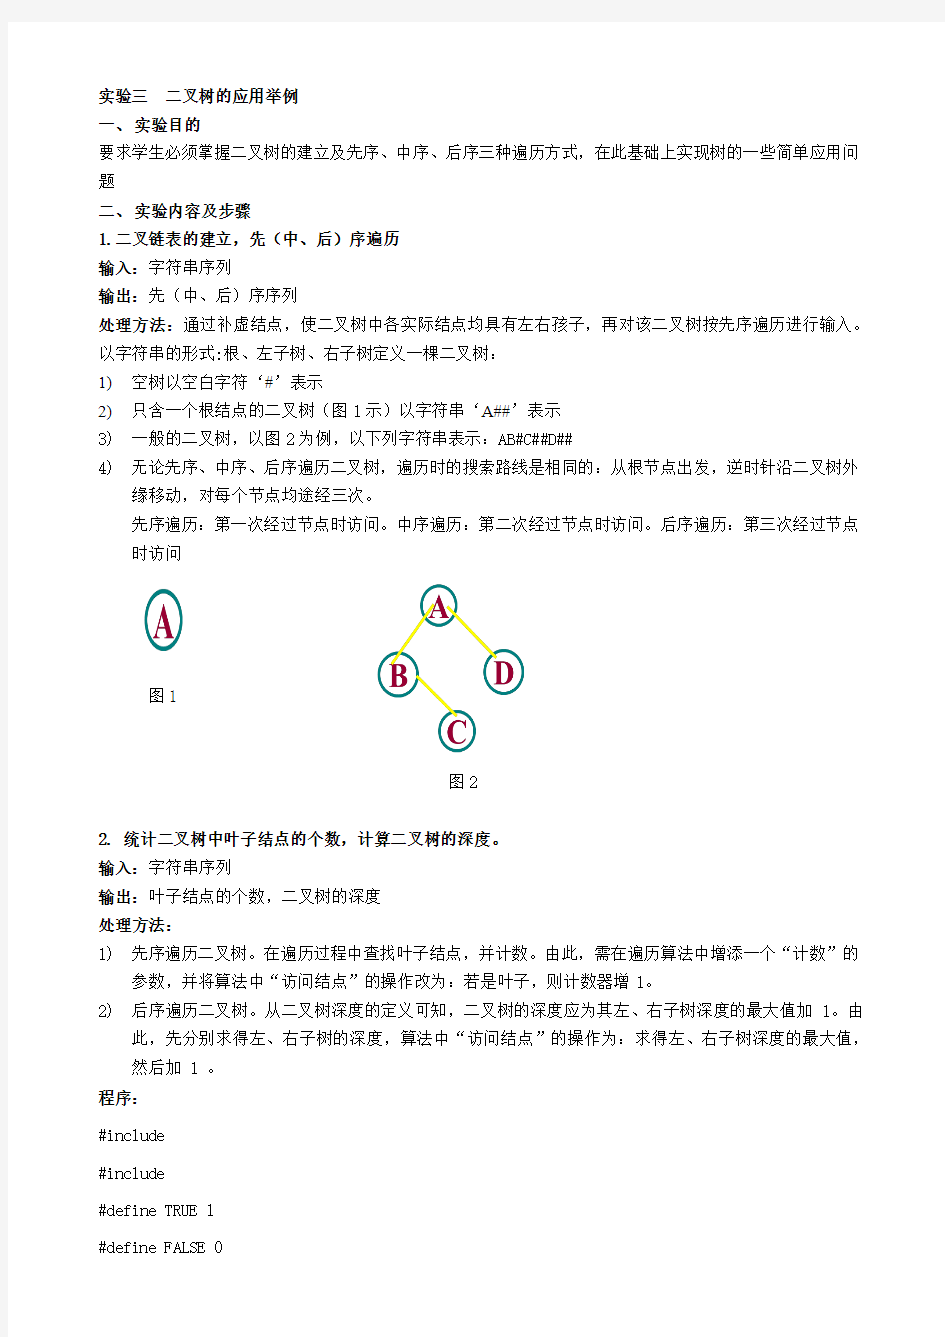 二叉树的应用举例实验报告(燕山大学)